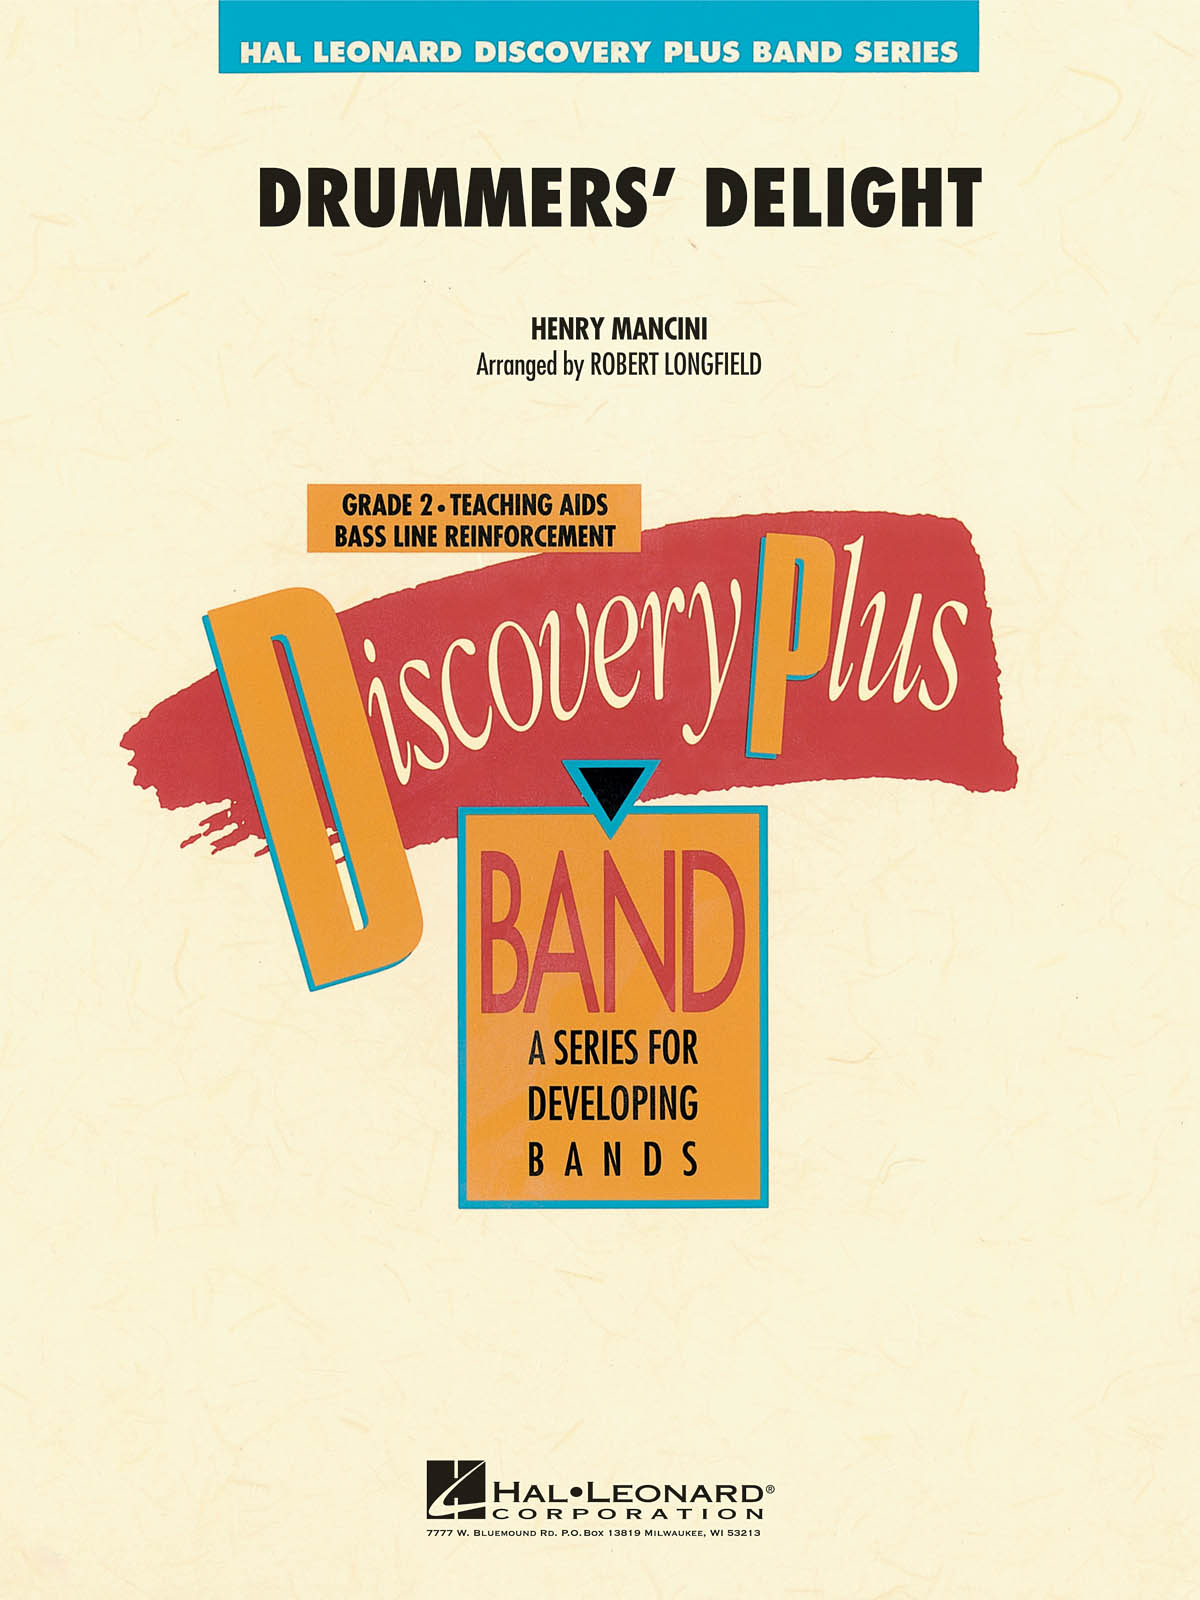 Drummers’ Delight